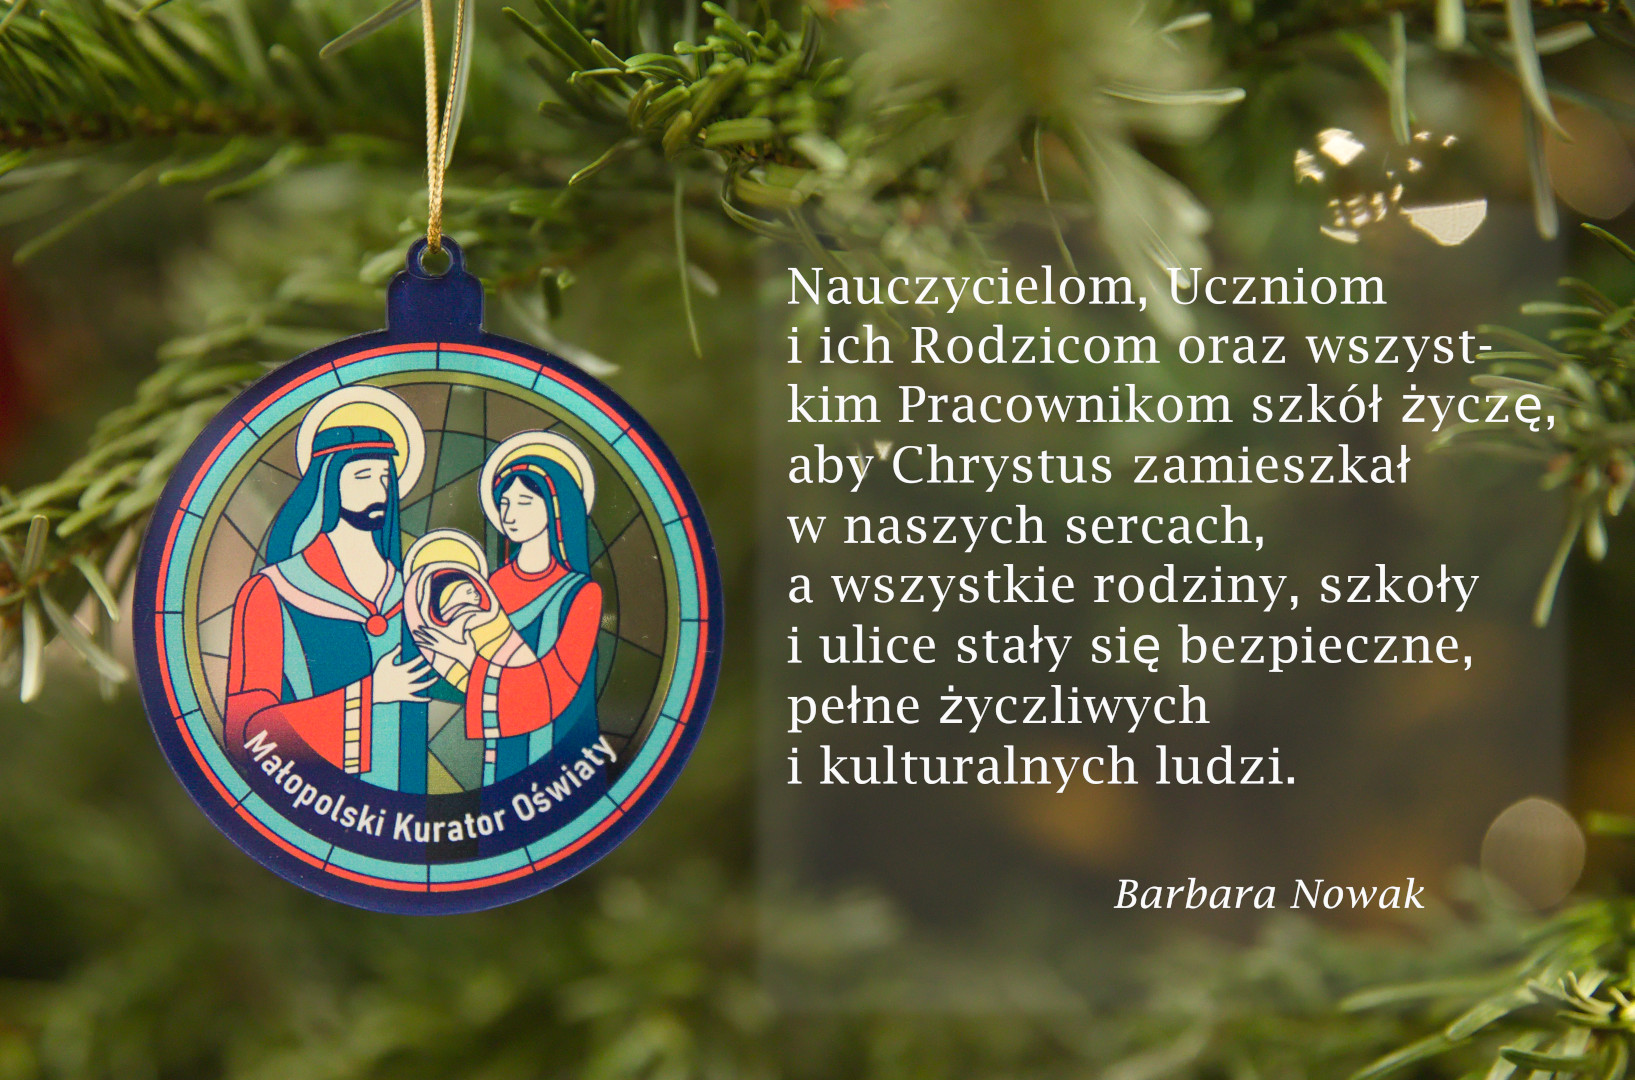 Życzenia bożonarodzeniowe od Małopolskiego Kuratora Oświaty